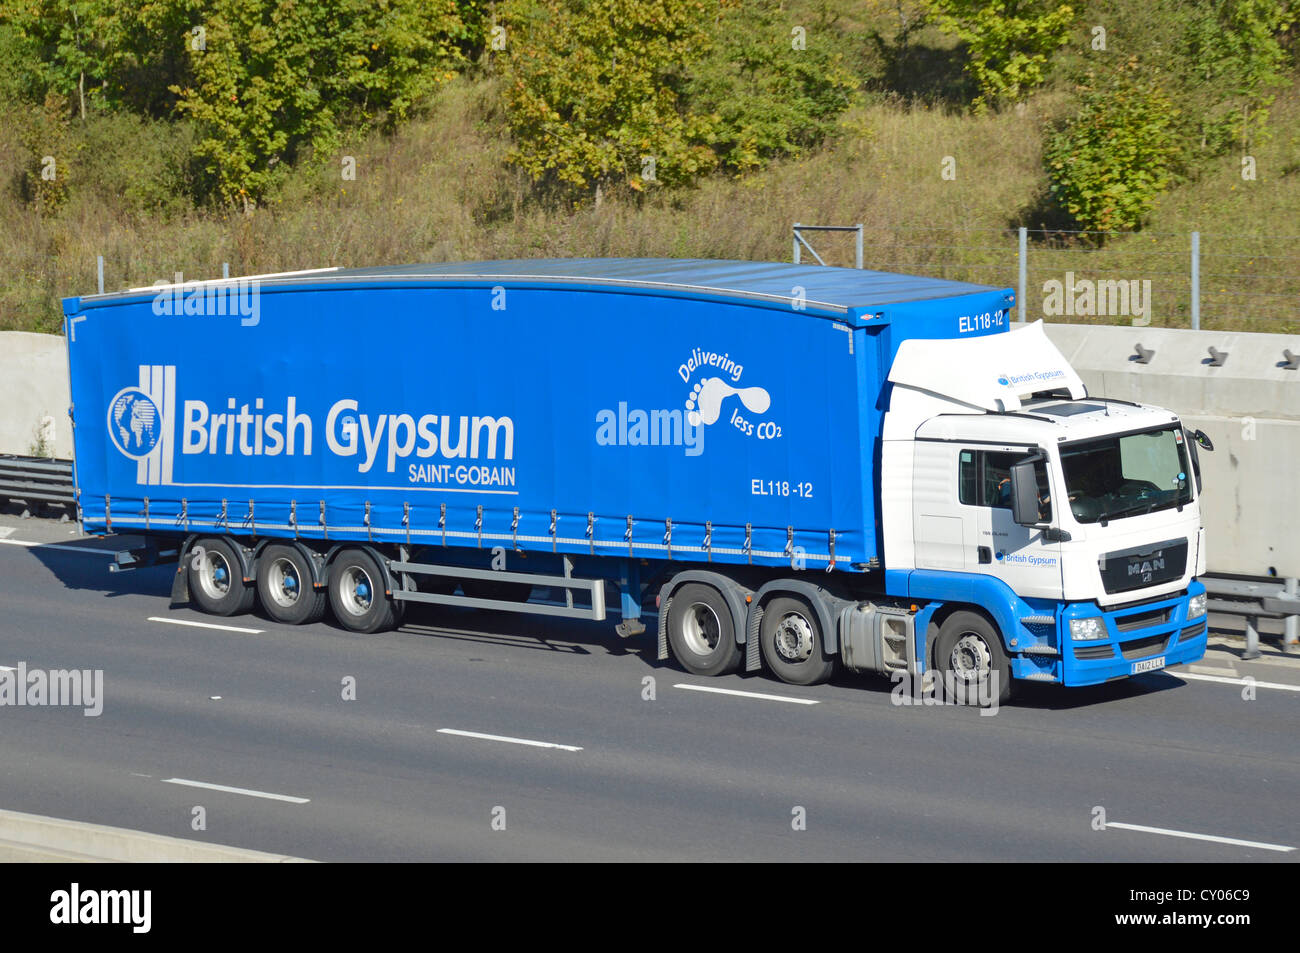 Vue latérale British Gypsum Saint-Gobain entreprise de matériaux de  placoplâtre chaîne d'approvisionnement camion et transport de remorque avec  publicité de marque Royaume-Uni Photo Stock - Alamy